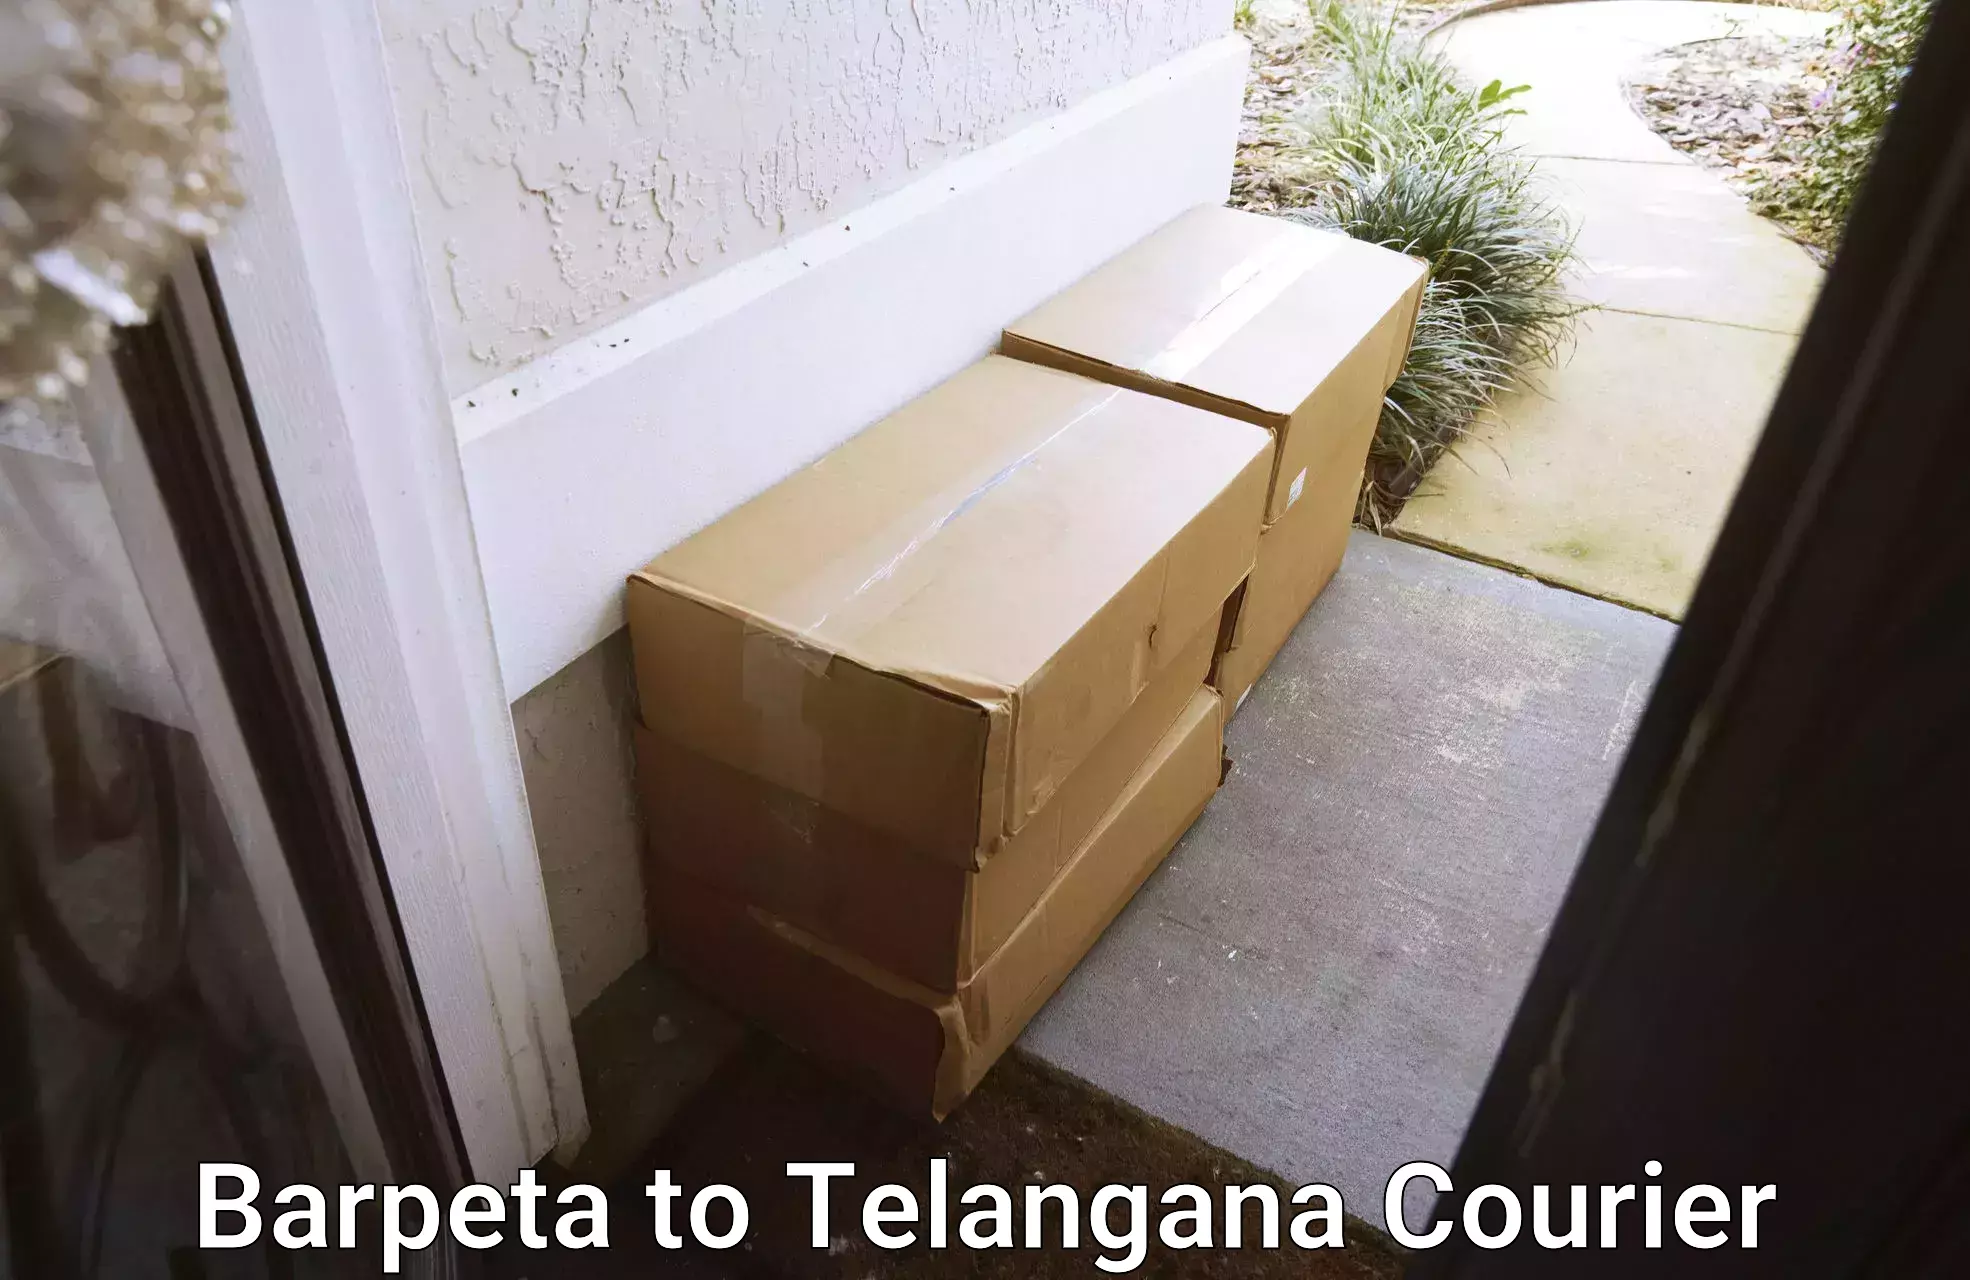 Premium courier services in Barpeta to Telangana